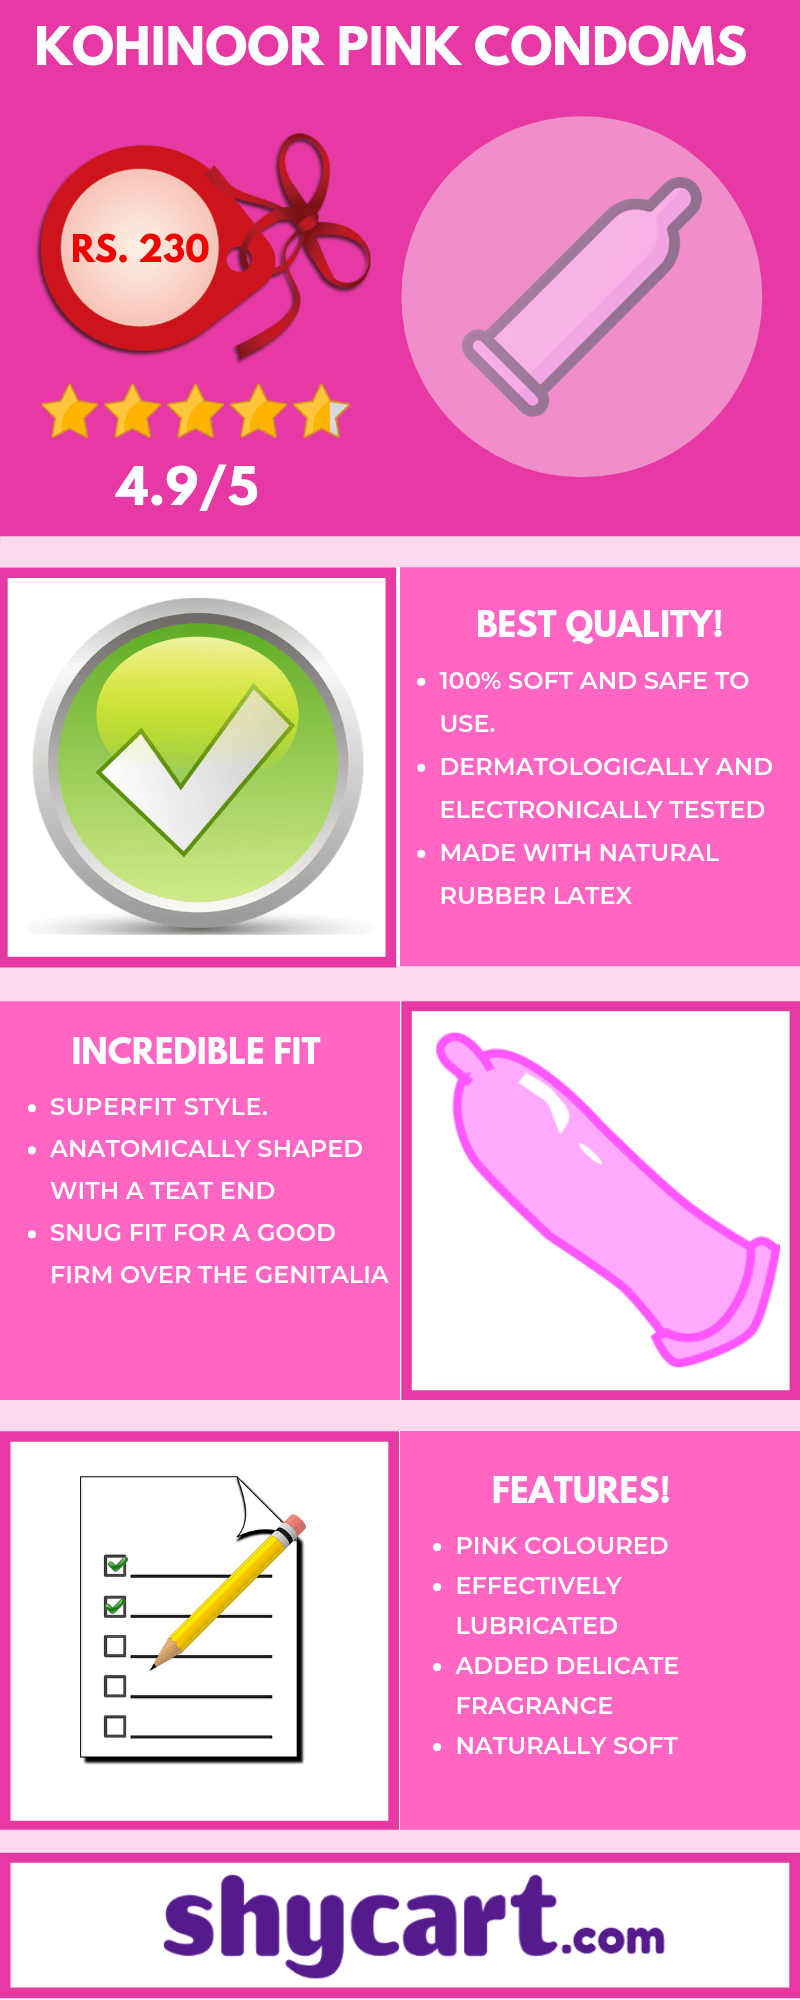 Kohinoor pink condom - Infographic